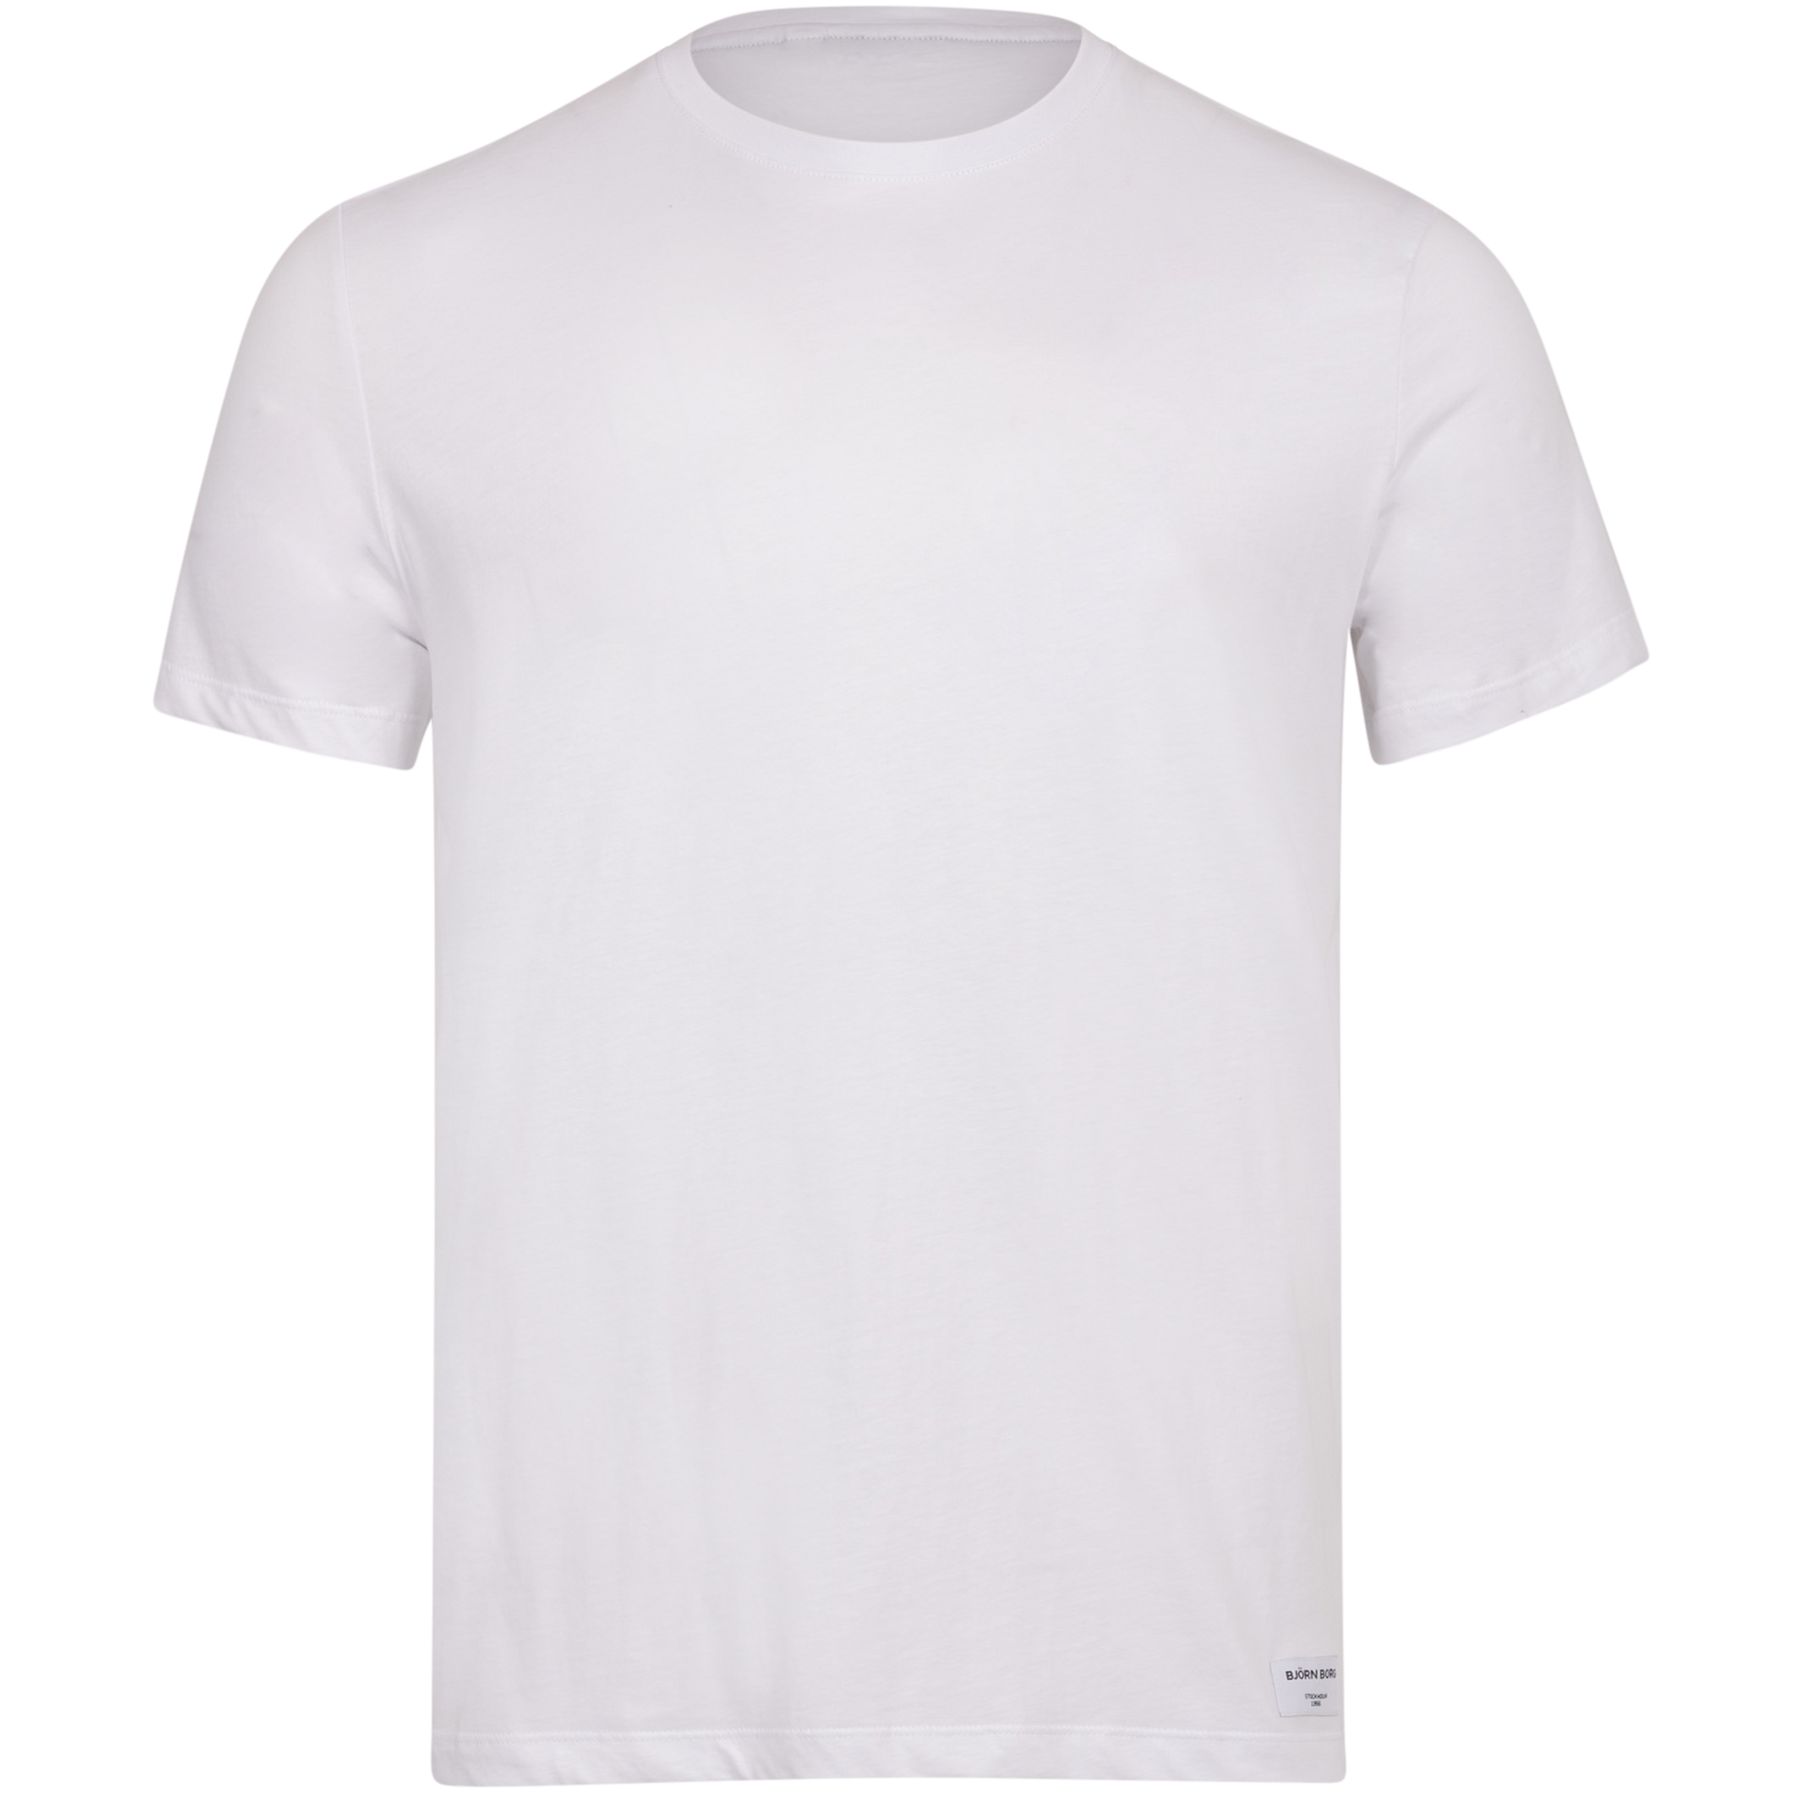 Centre T-Shirt - Brilliant White